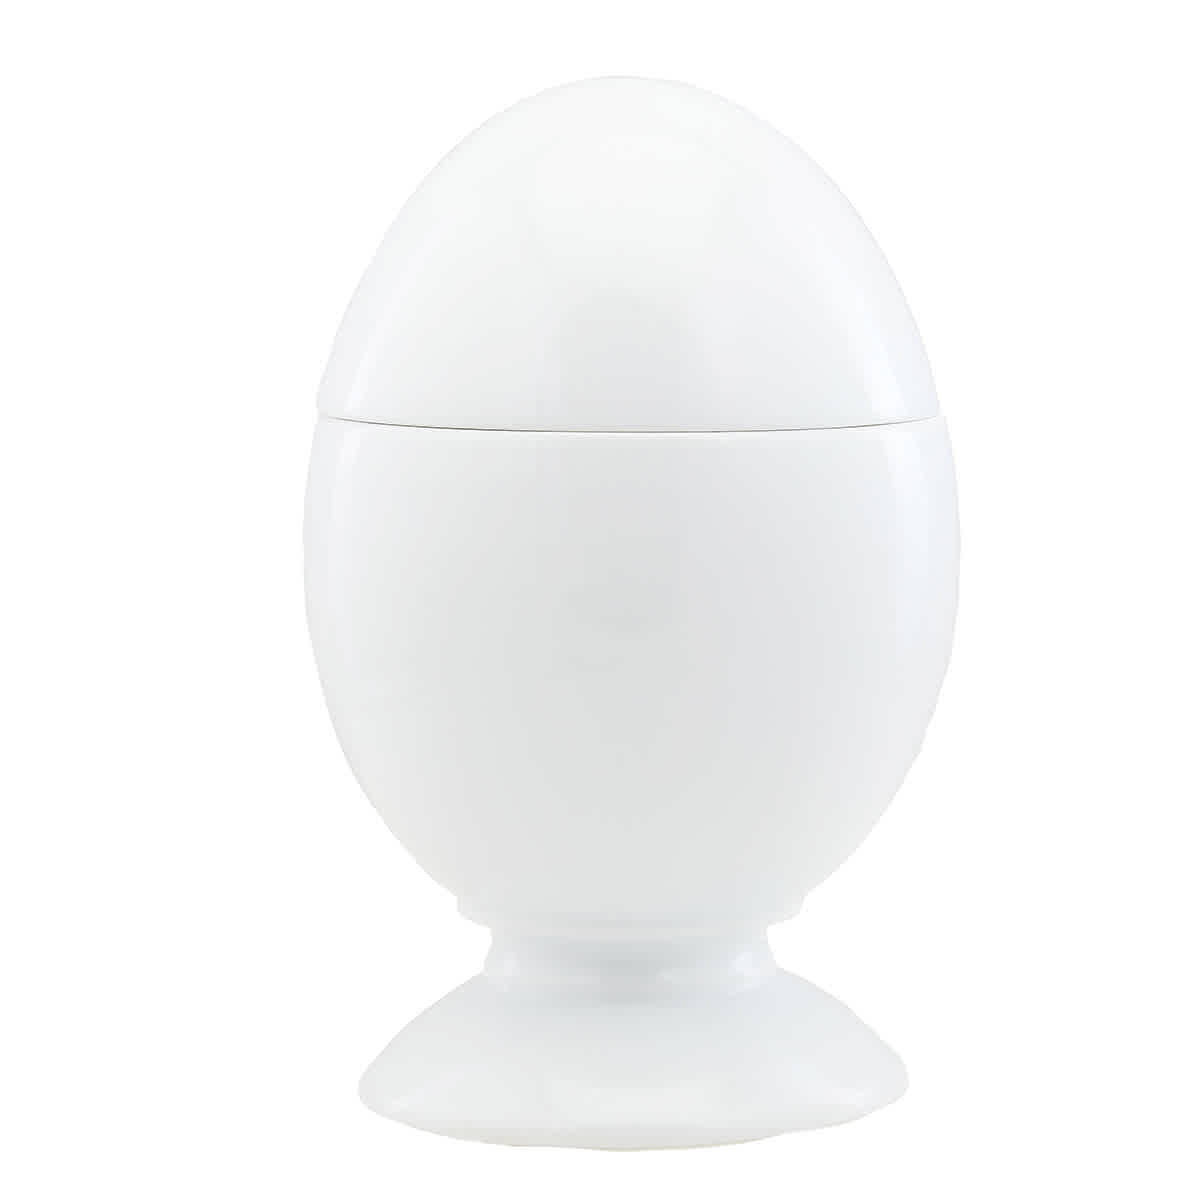 Ginori 1735 Oggetti Egg With Cover In White